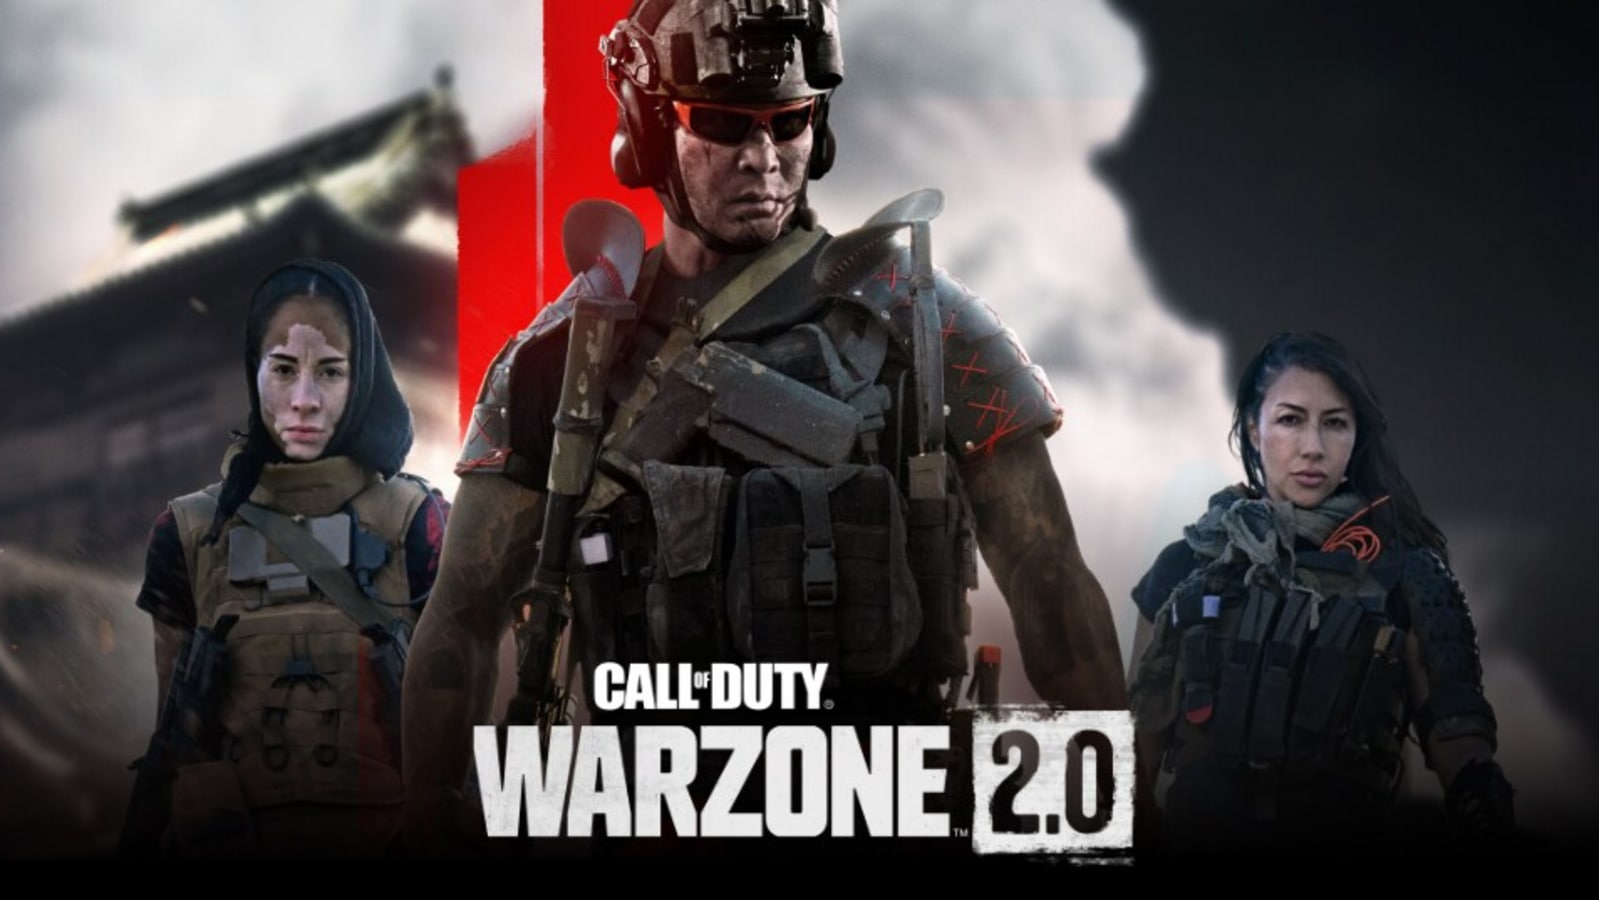 Cod Warzone Mobile vs Cod Warzone 2.0, Cod Warzone Mobile vs PC